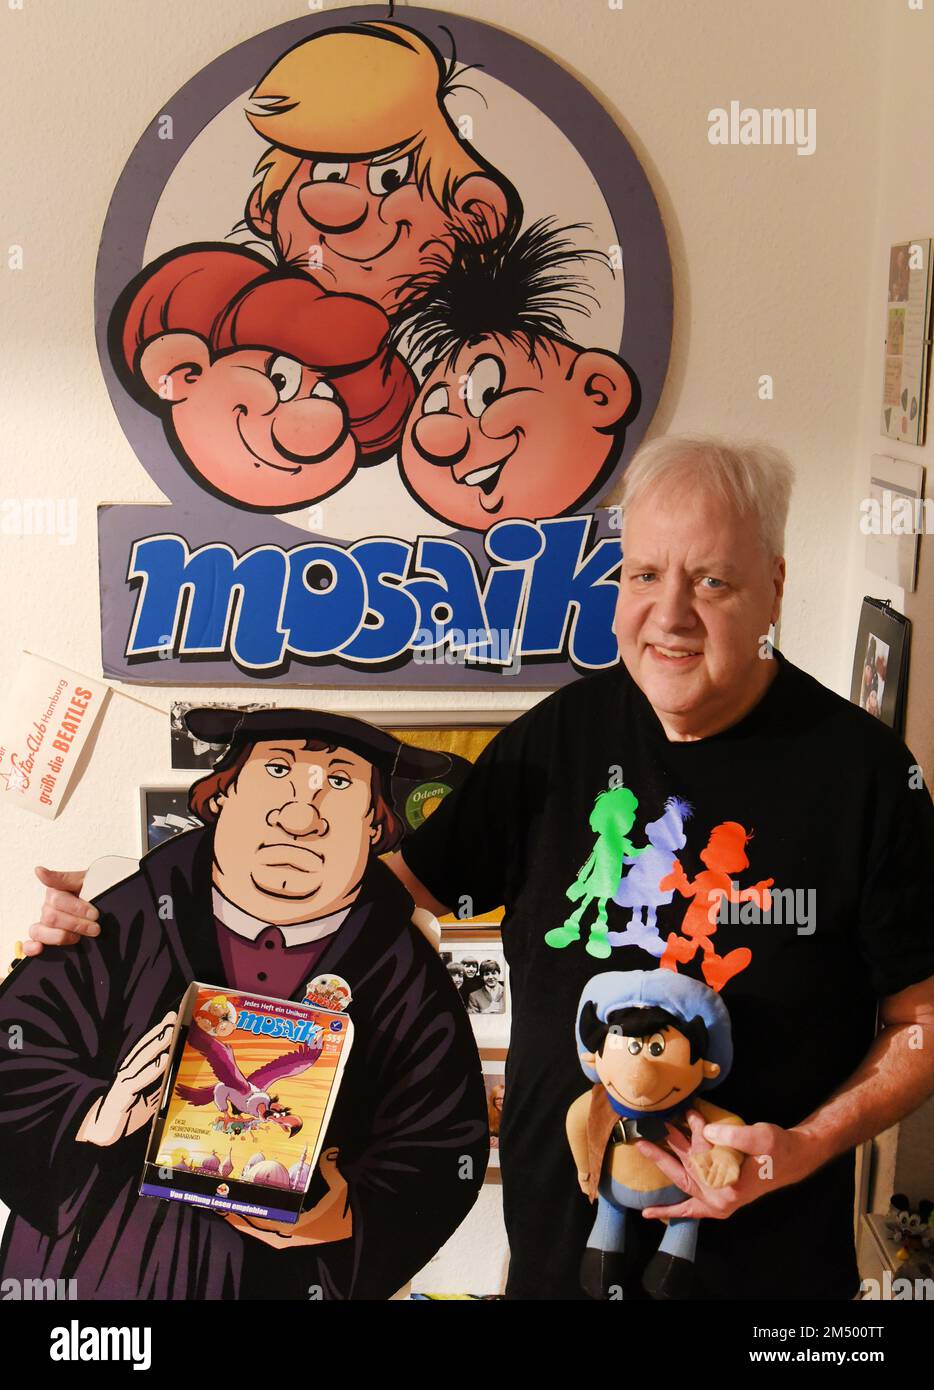 PRODUZIONE - 07 dicembre 2022, Sassonia, Lipsia: Il collezionista Thomas Wilde si trova nel suo appartamento con le mostre dei tre personaggi simili a goblin Abrax, Brabax e Califax della rivista comica Mosaik, una mostra di Luther (l) della serie con lo stesso nome e la bambola Dig dei Digedags in mano. Gli Abrafax sono i successori dei Digedag dei fumetti Mosaik, che sono stati i principali eroi della rivista di fumetti Mosaik pubblicata nella RDT dal 1955 al 1975 e appartengono ad una stima di 8.000 oggetti Mosaik raccolti dall'ex insegnante inglese e tedesco di 63 anni. Nel suo appartamento Foto Stock